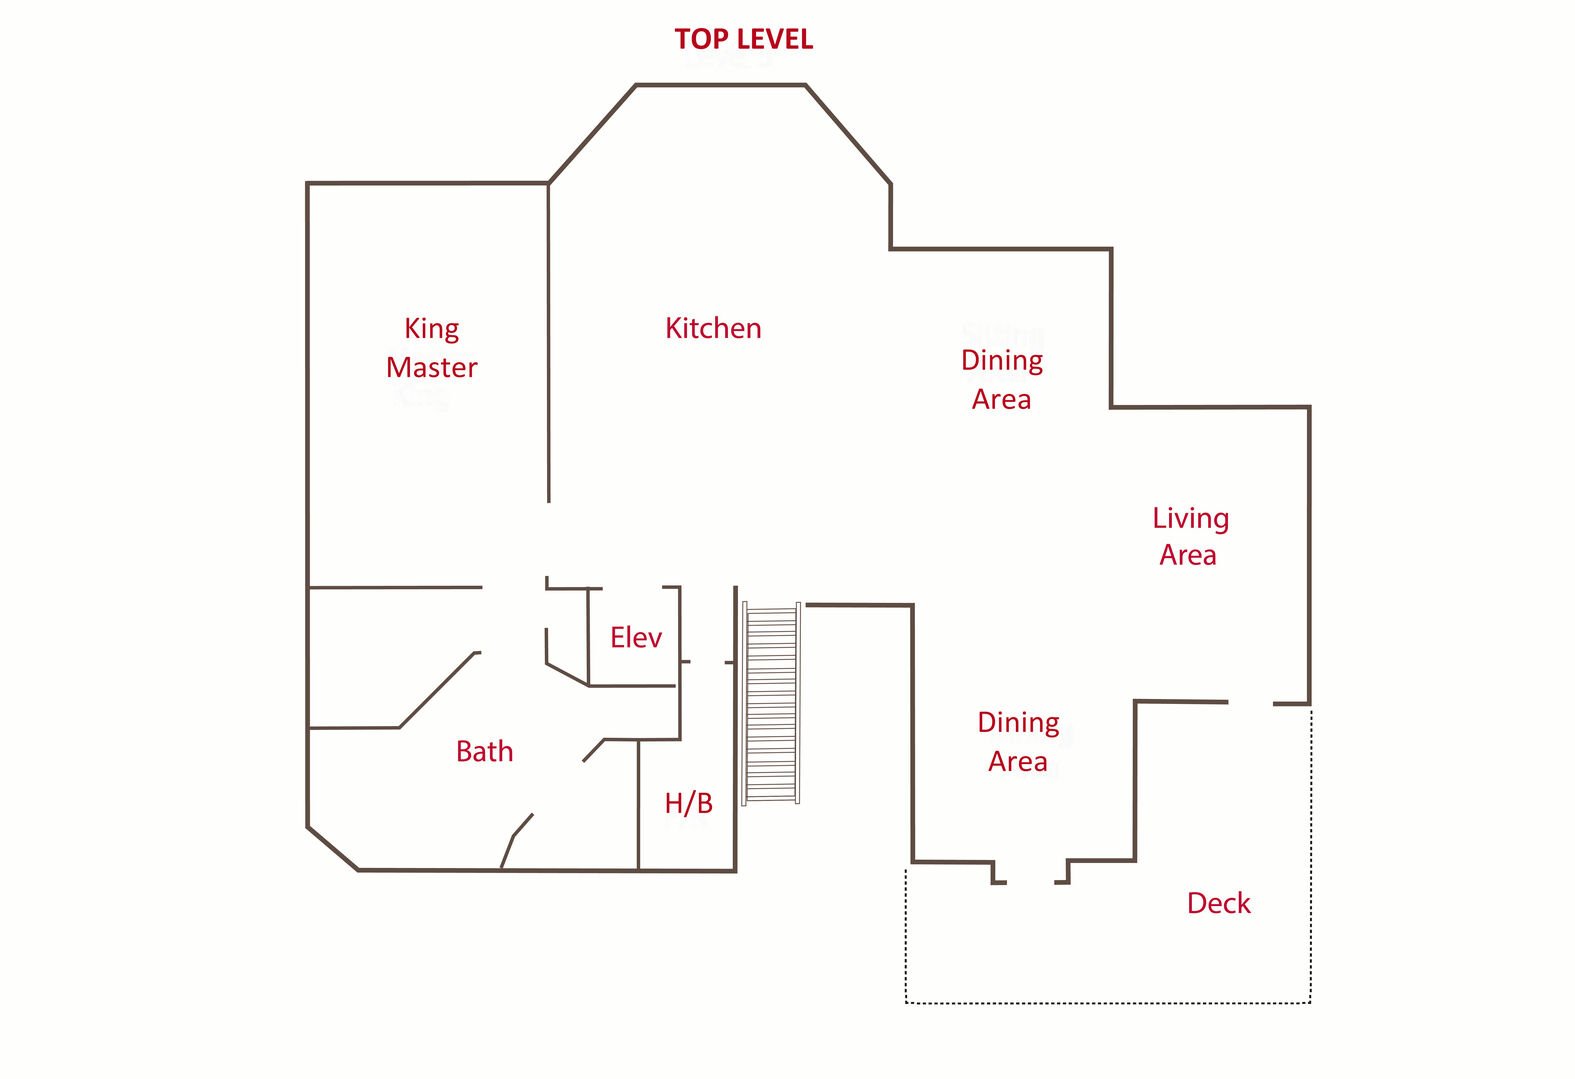 Floor Plan - Top Level